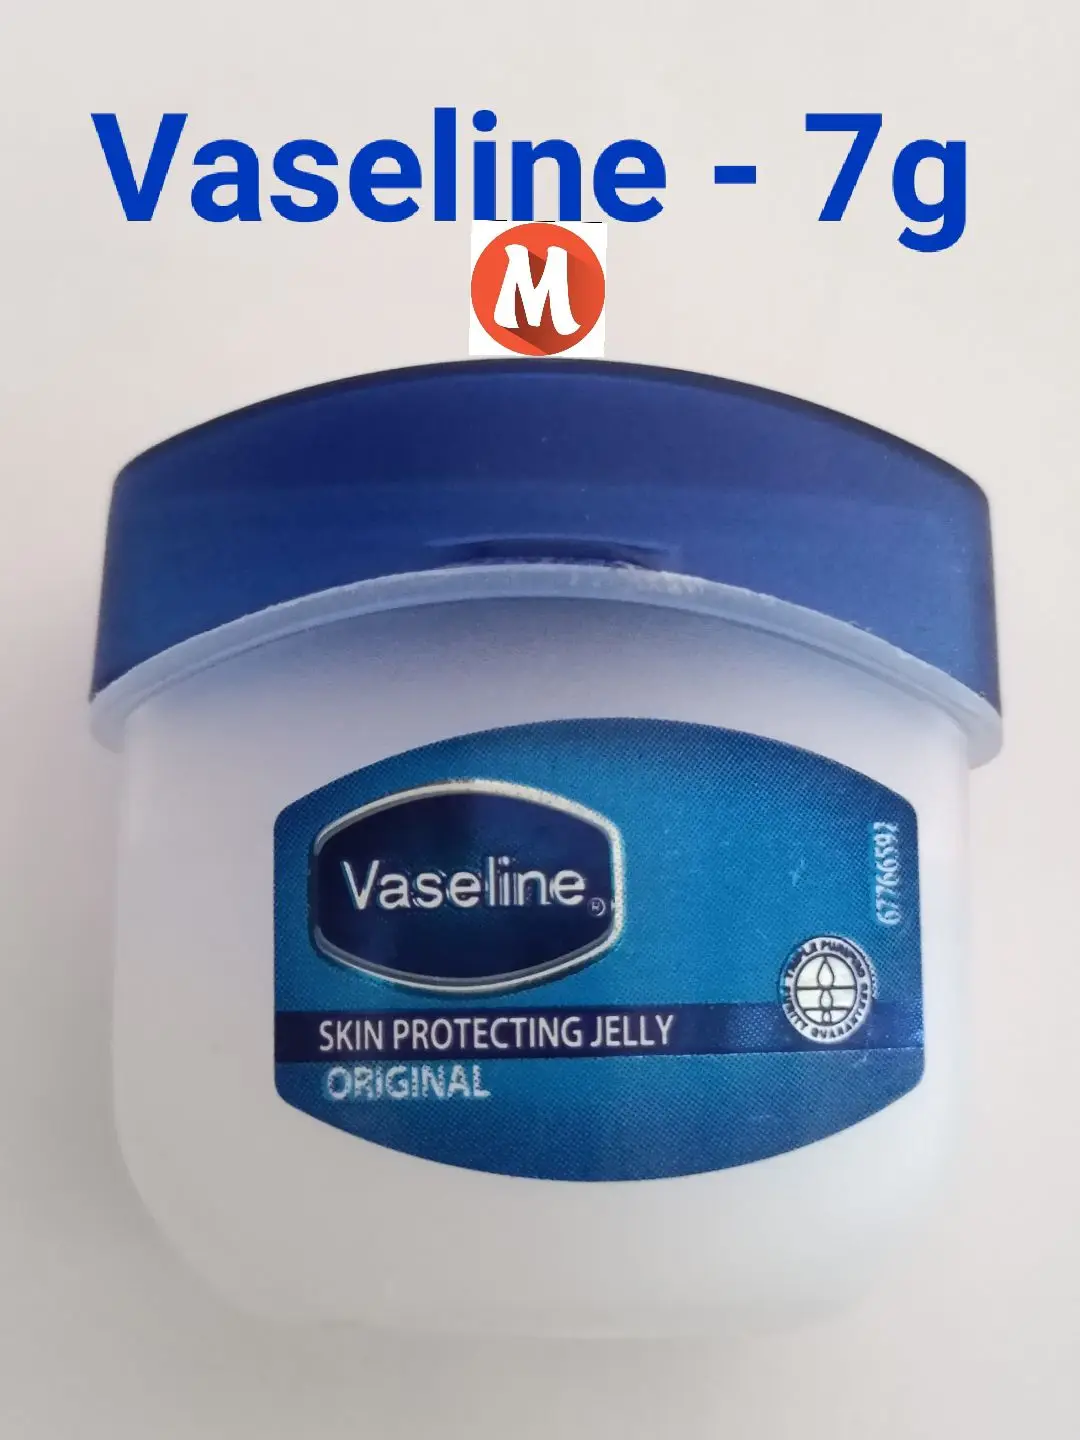 Vaseline อินเดีย mini [7 g.] วาสลีน จิ๋ว นำเข้าจากอินเดีย ลิปบำรุงริมฝีปาก ไม่มีกลิ่น ไม่มีสี